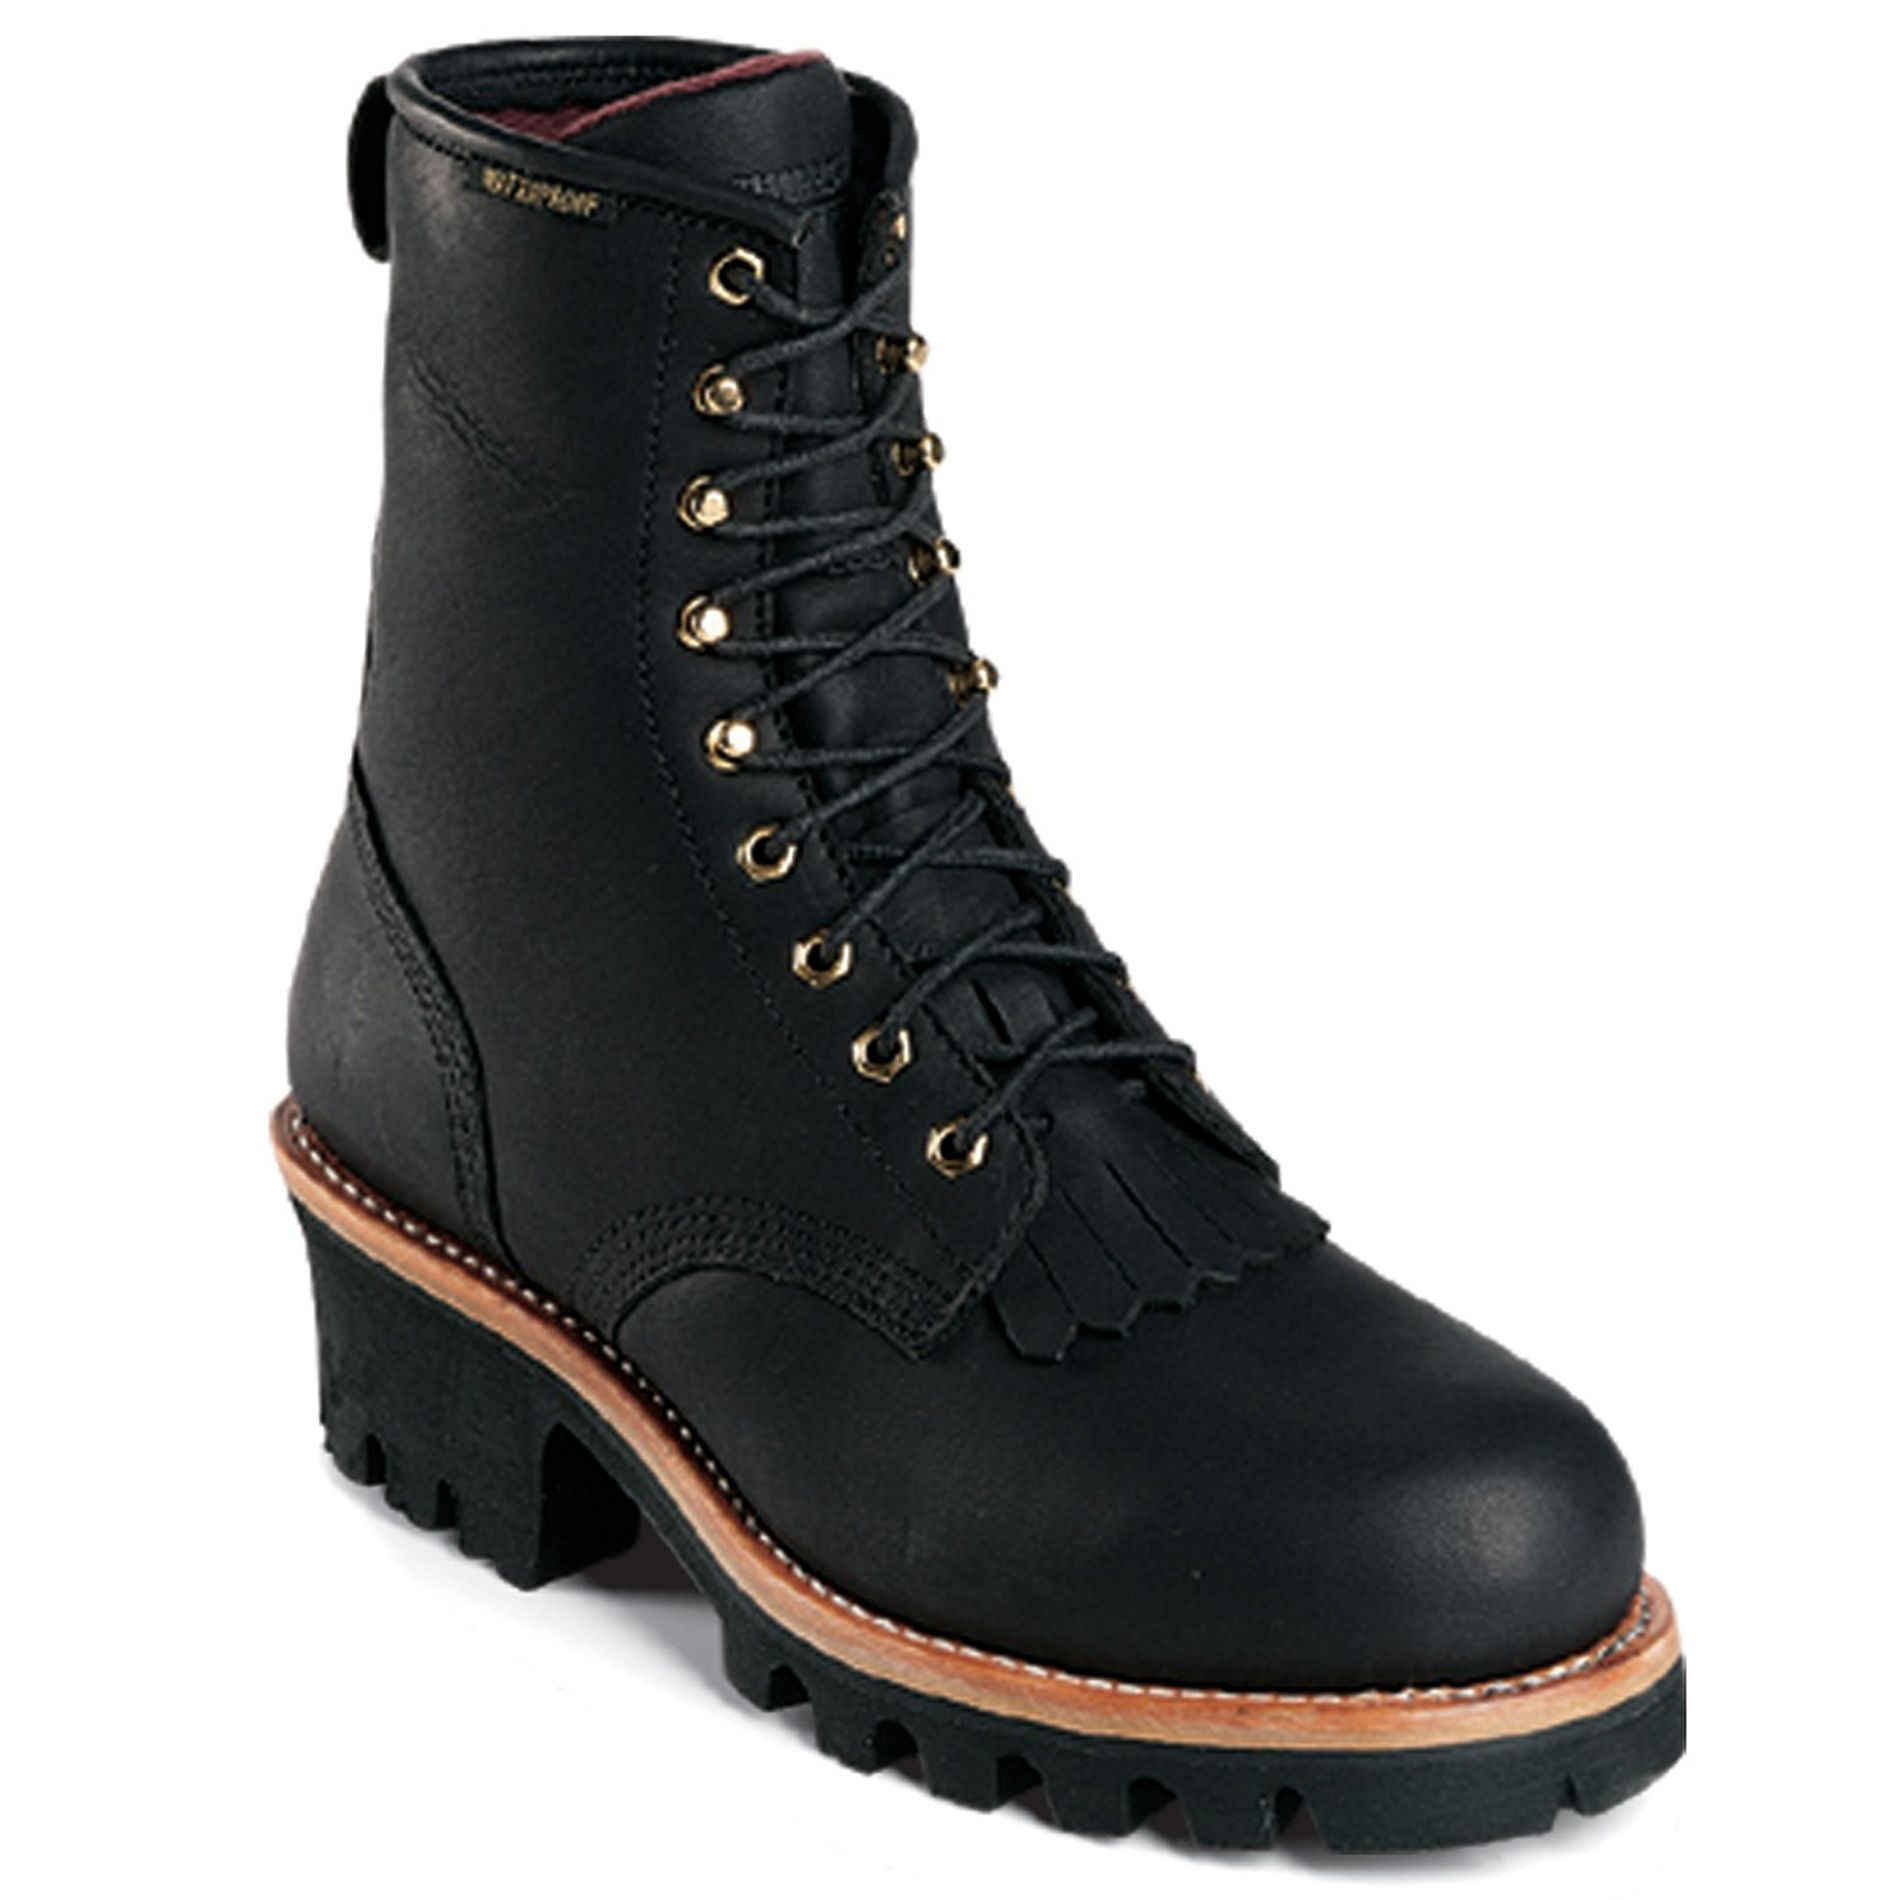 Men's 73050 8" Steel Toe Waterproof Insulated Work Boot - Black